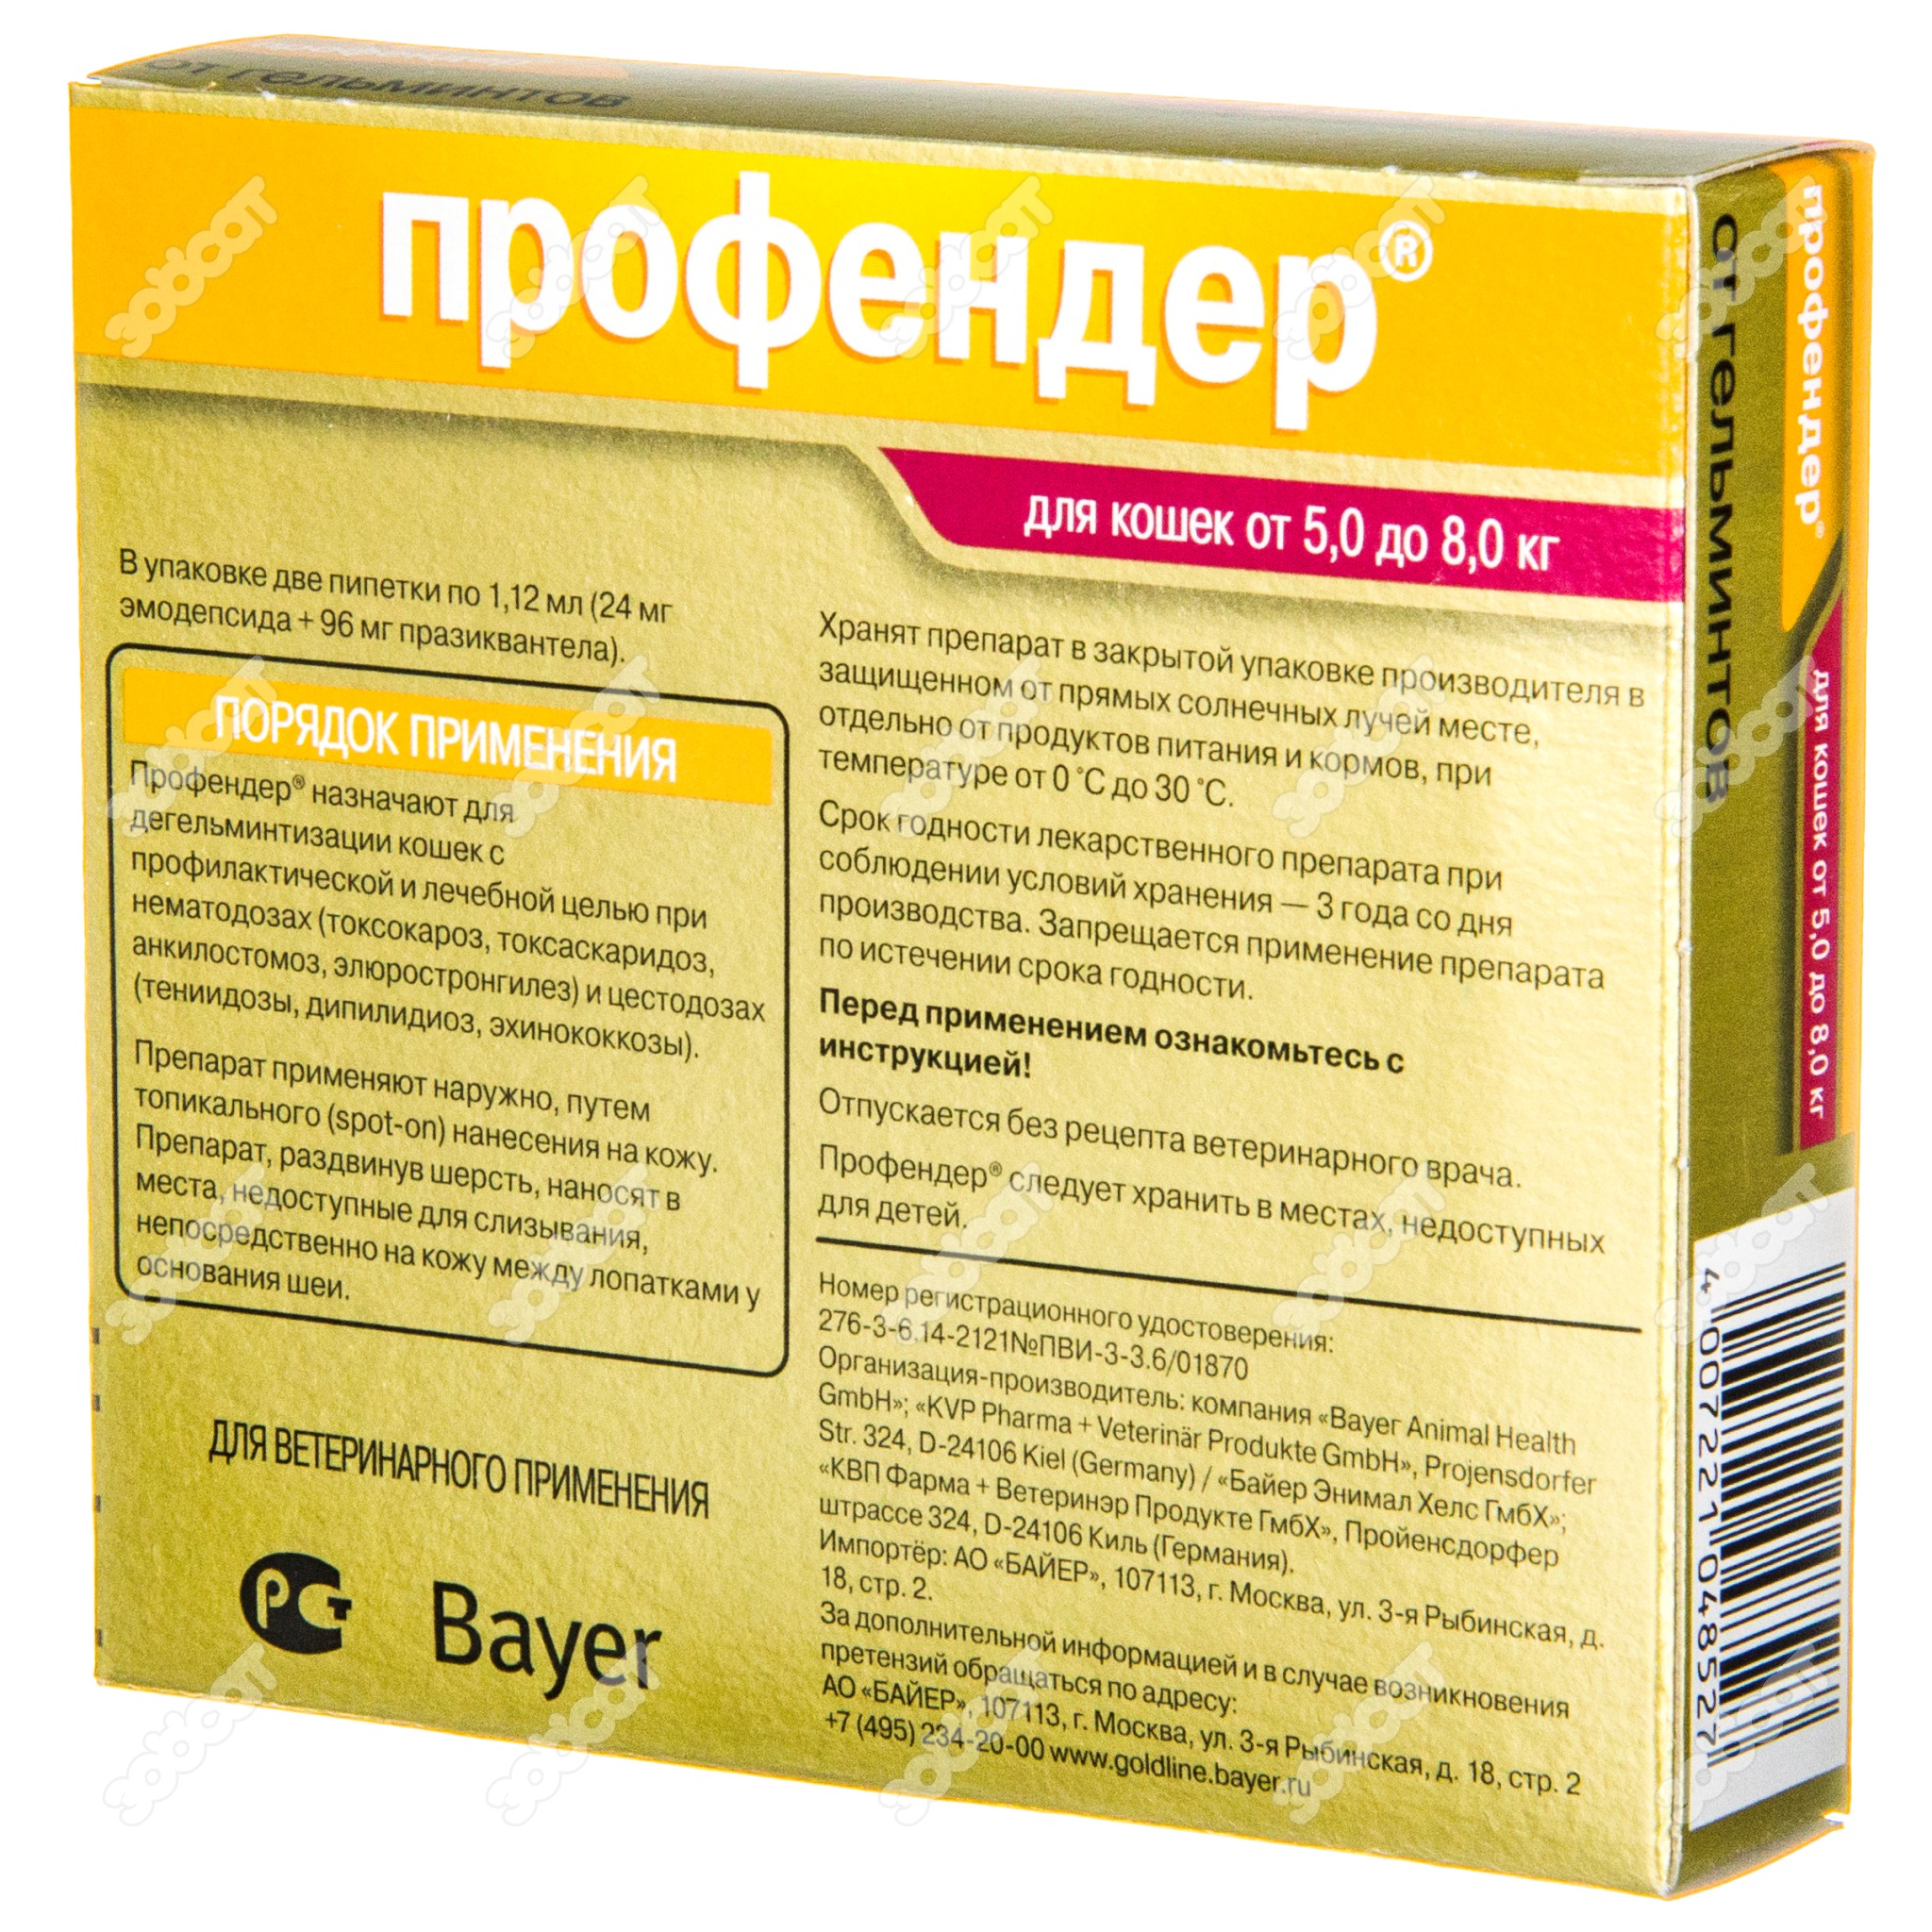 Colibriderm hydro: клинический пример применения интрадермального имплантата с гиалуронатом натрия | портал 1nep.ru